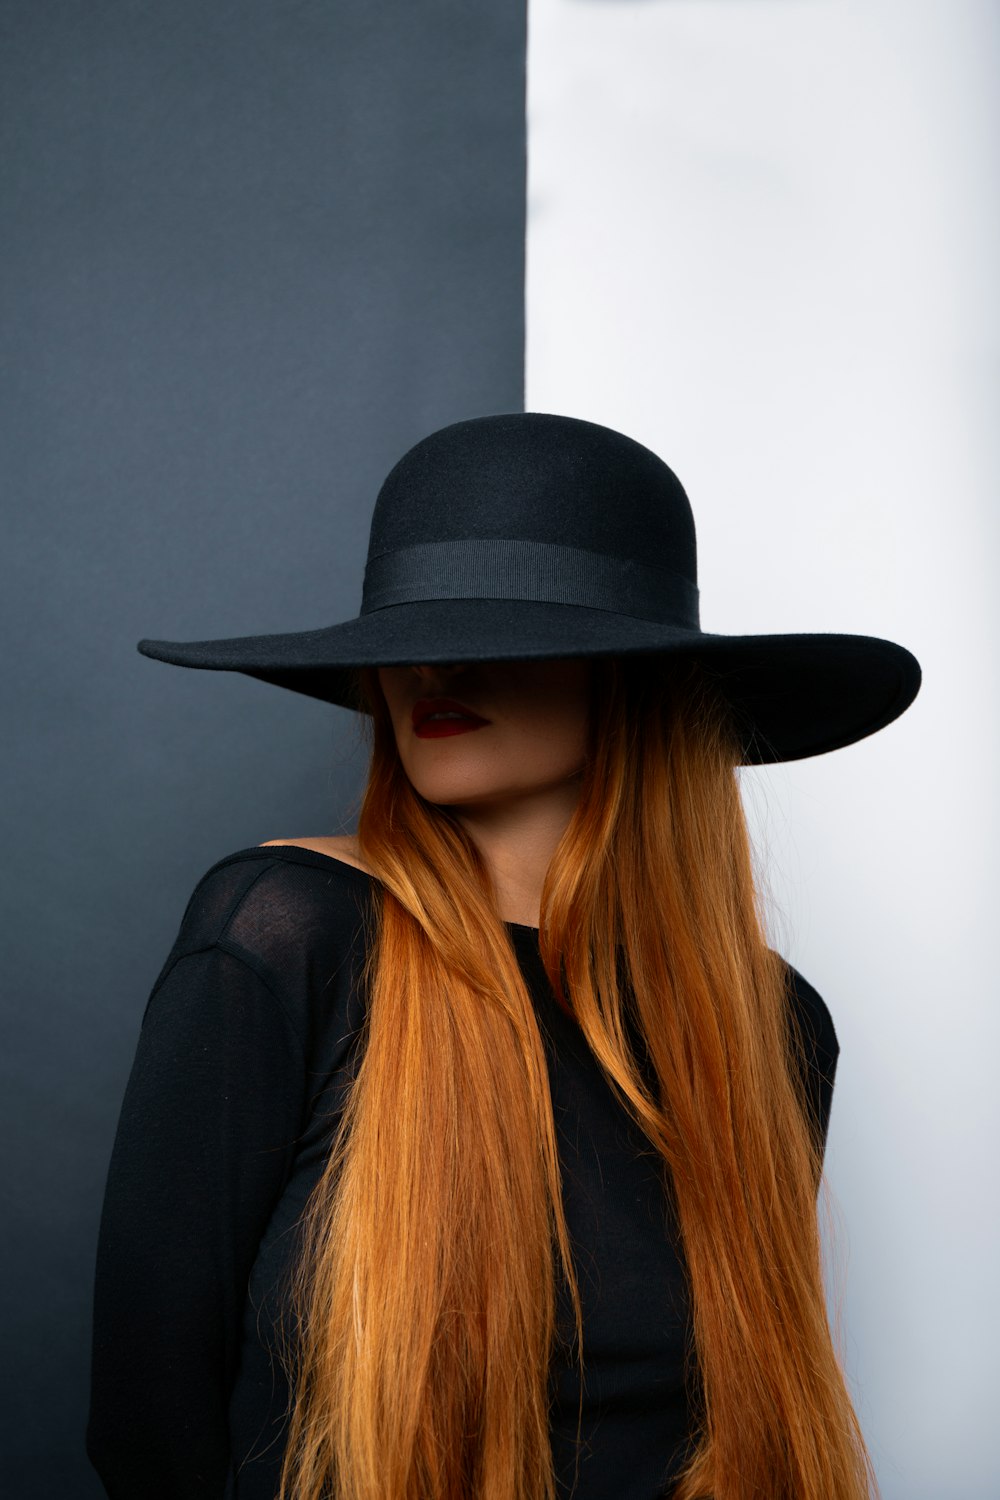 Una mujer con el pelo largo y rojo con un sombrero negro